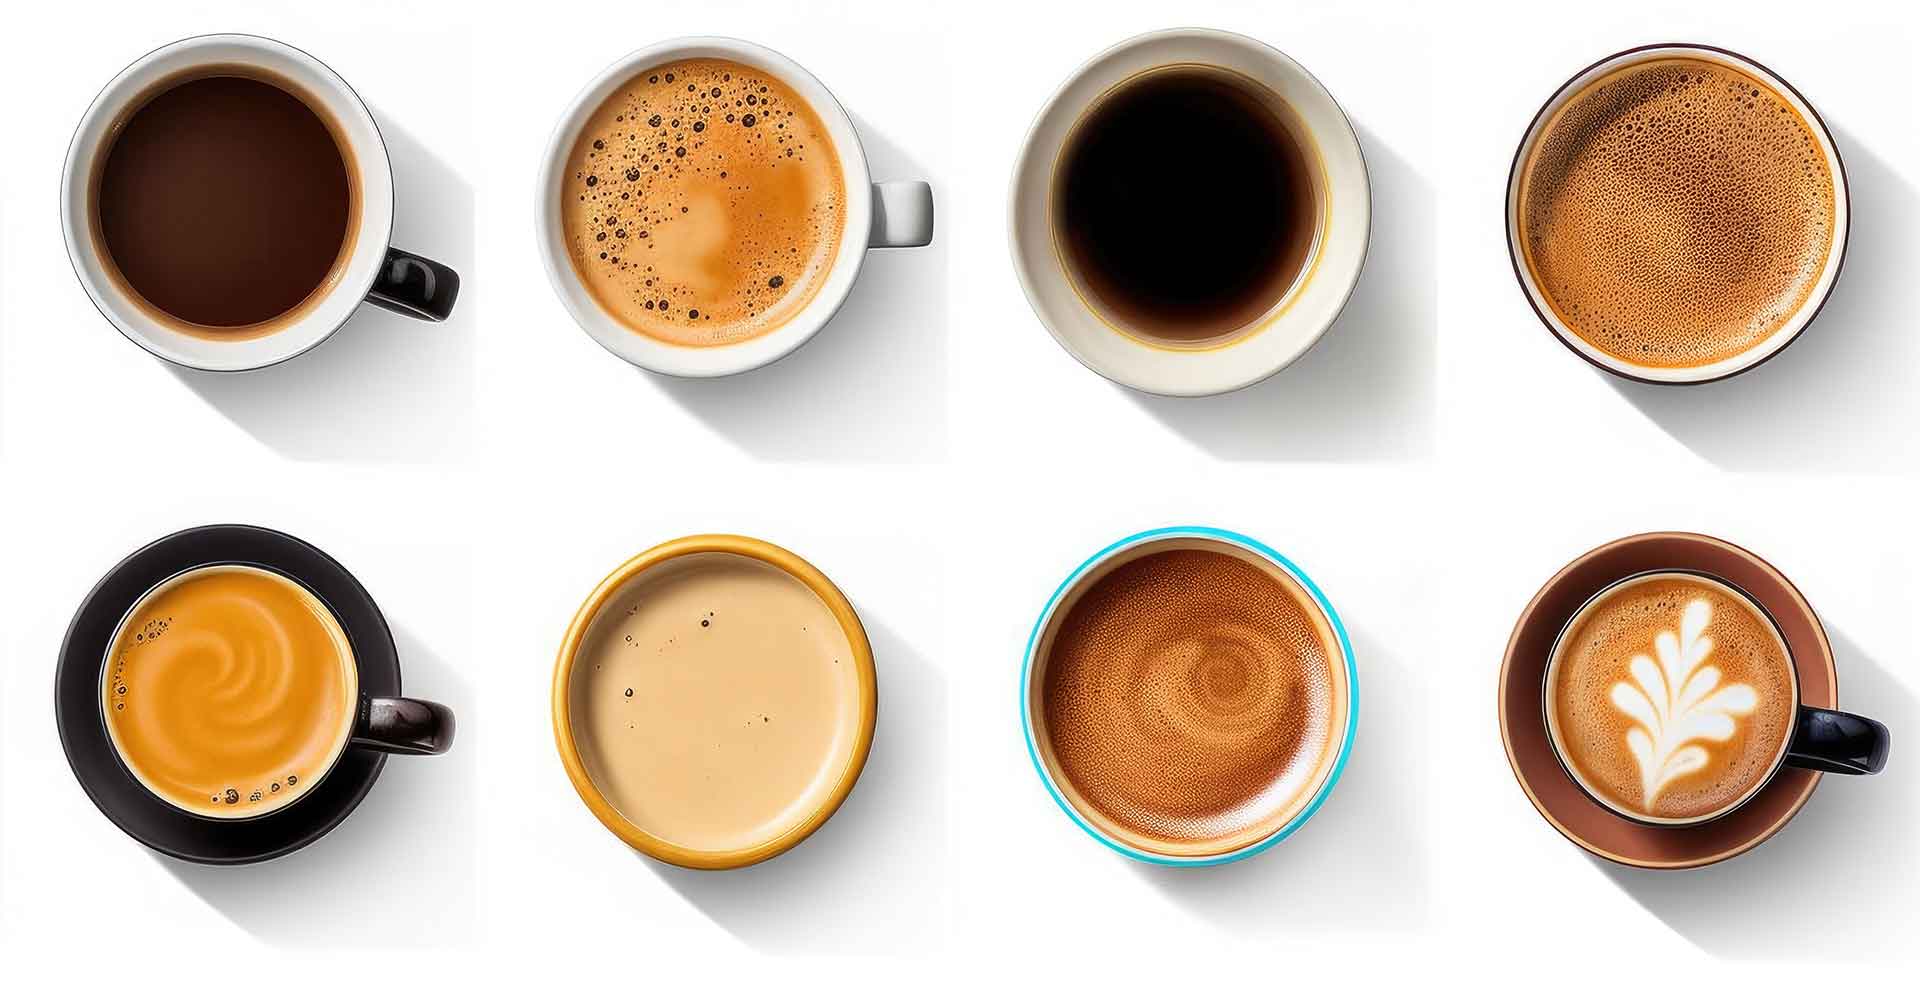 opt cesti de cafea cu diverse tipuri de preparare a cafelei